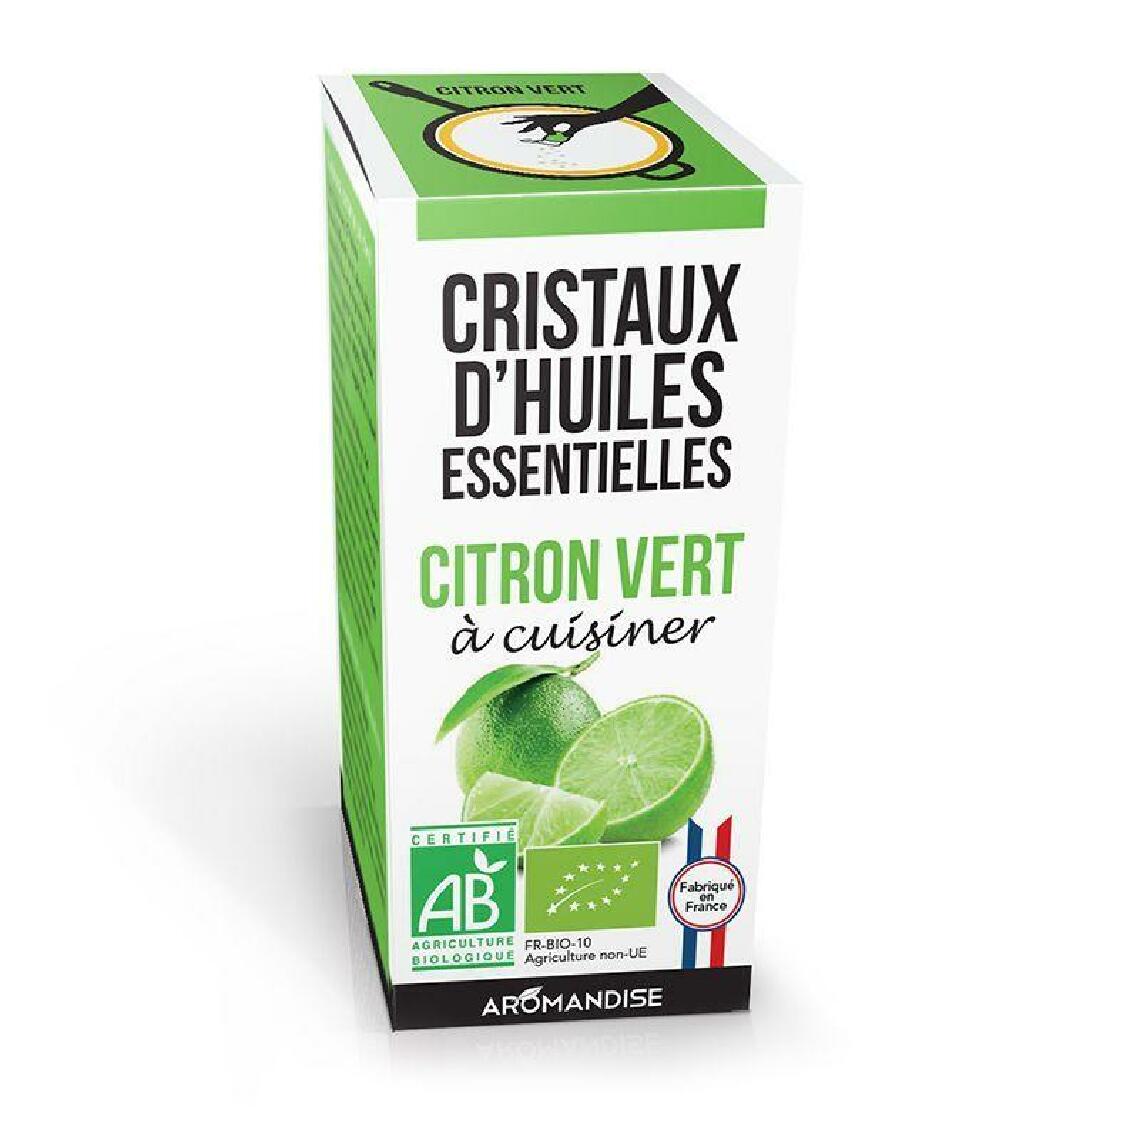 Aromandise - Cristaux d'huiles essentielles 10 g - Citron vert - Kits créatifs